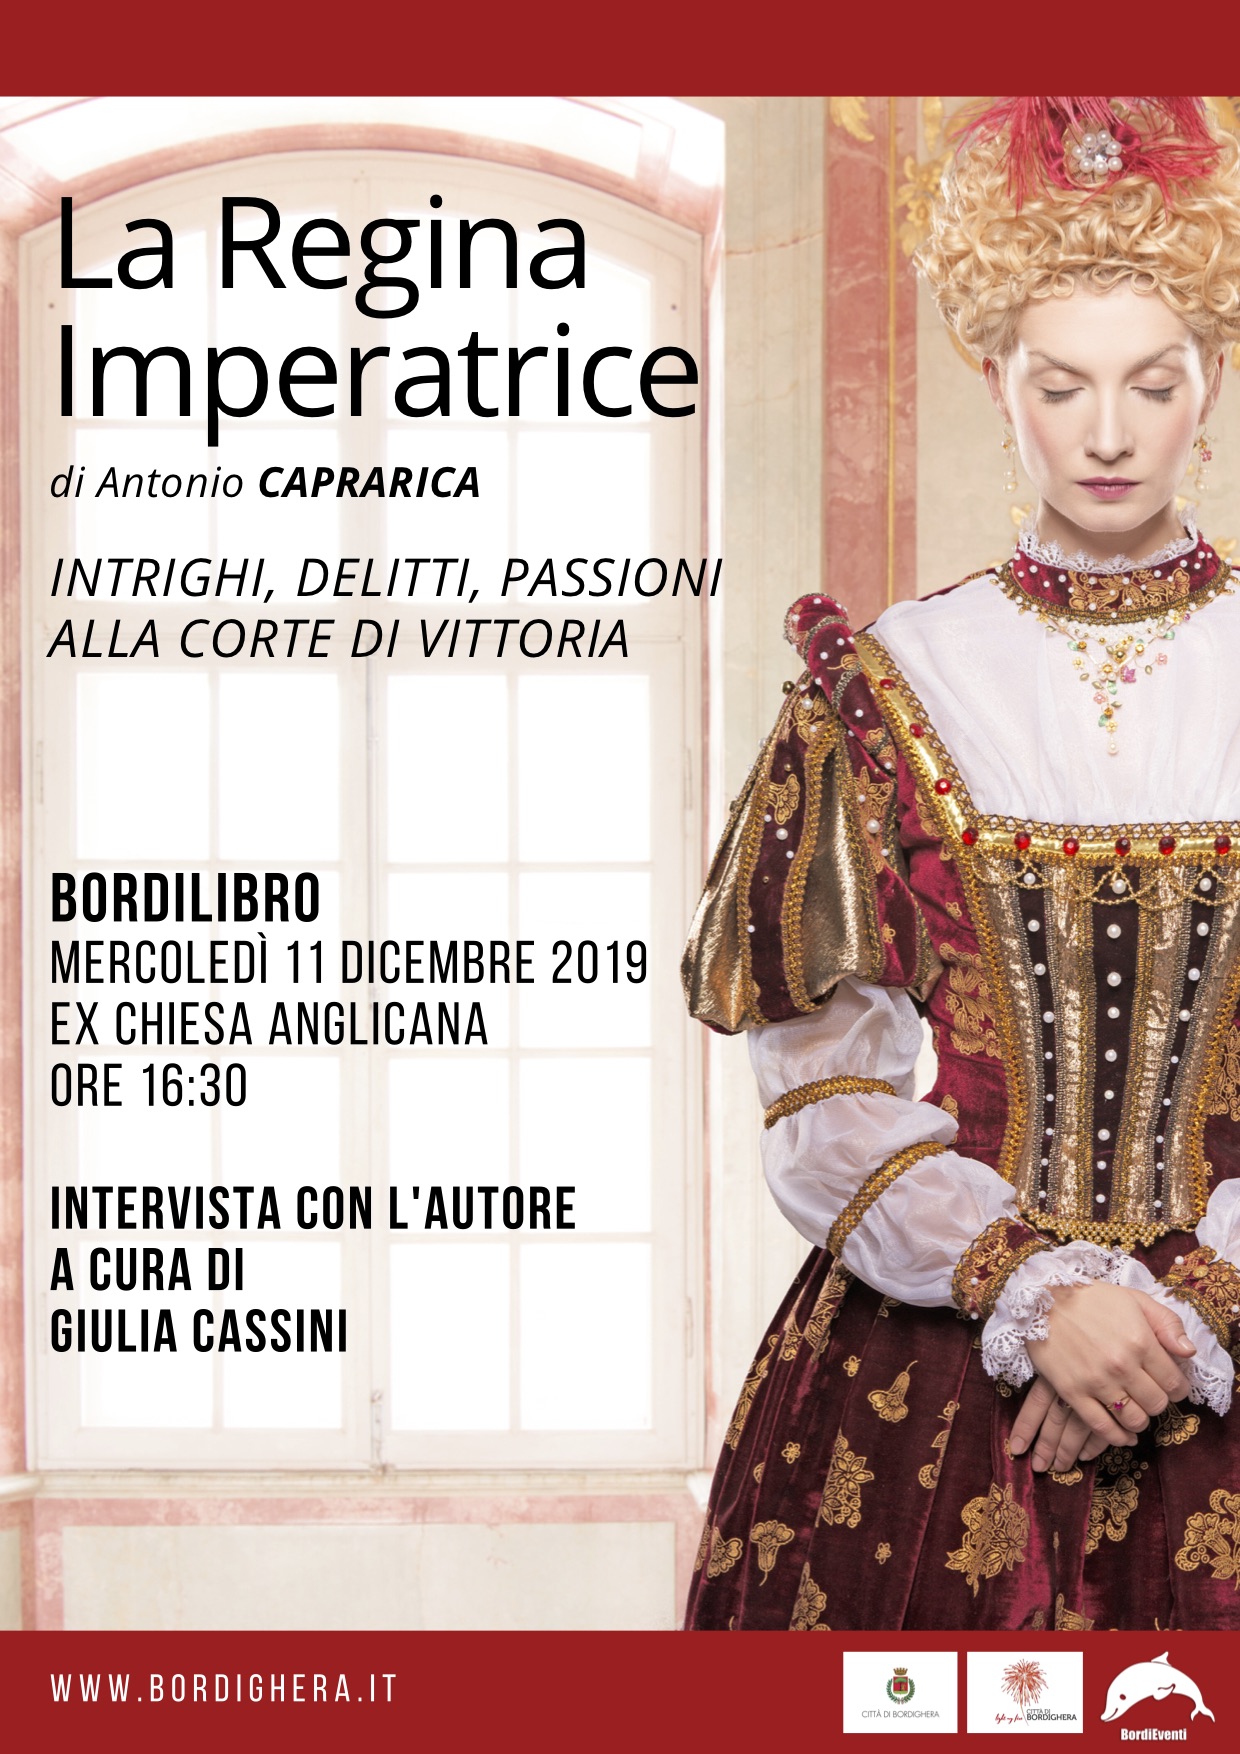 Antonio Caprarica La Regina Imperatrice Bordighera